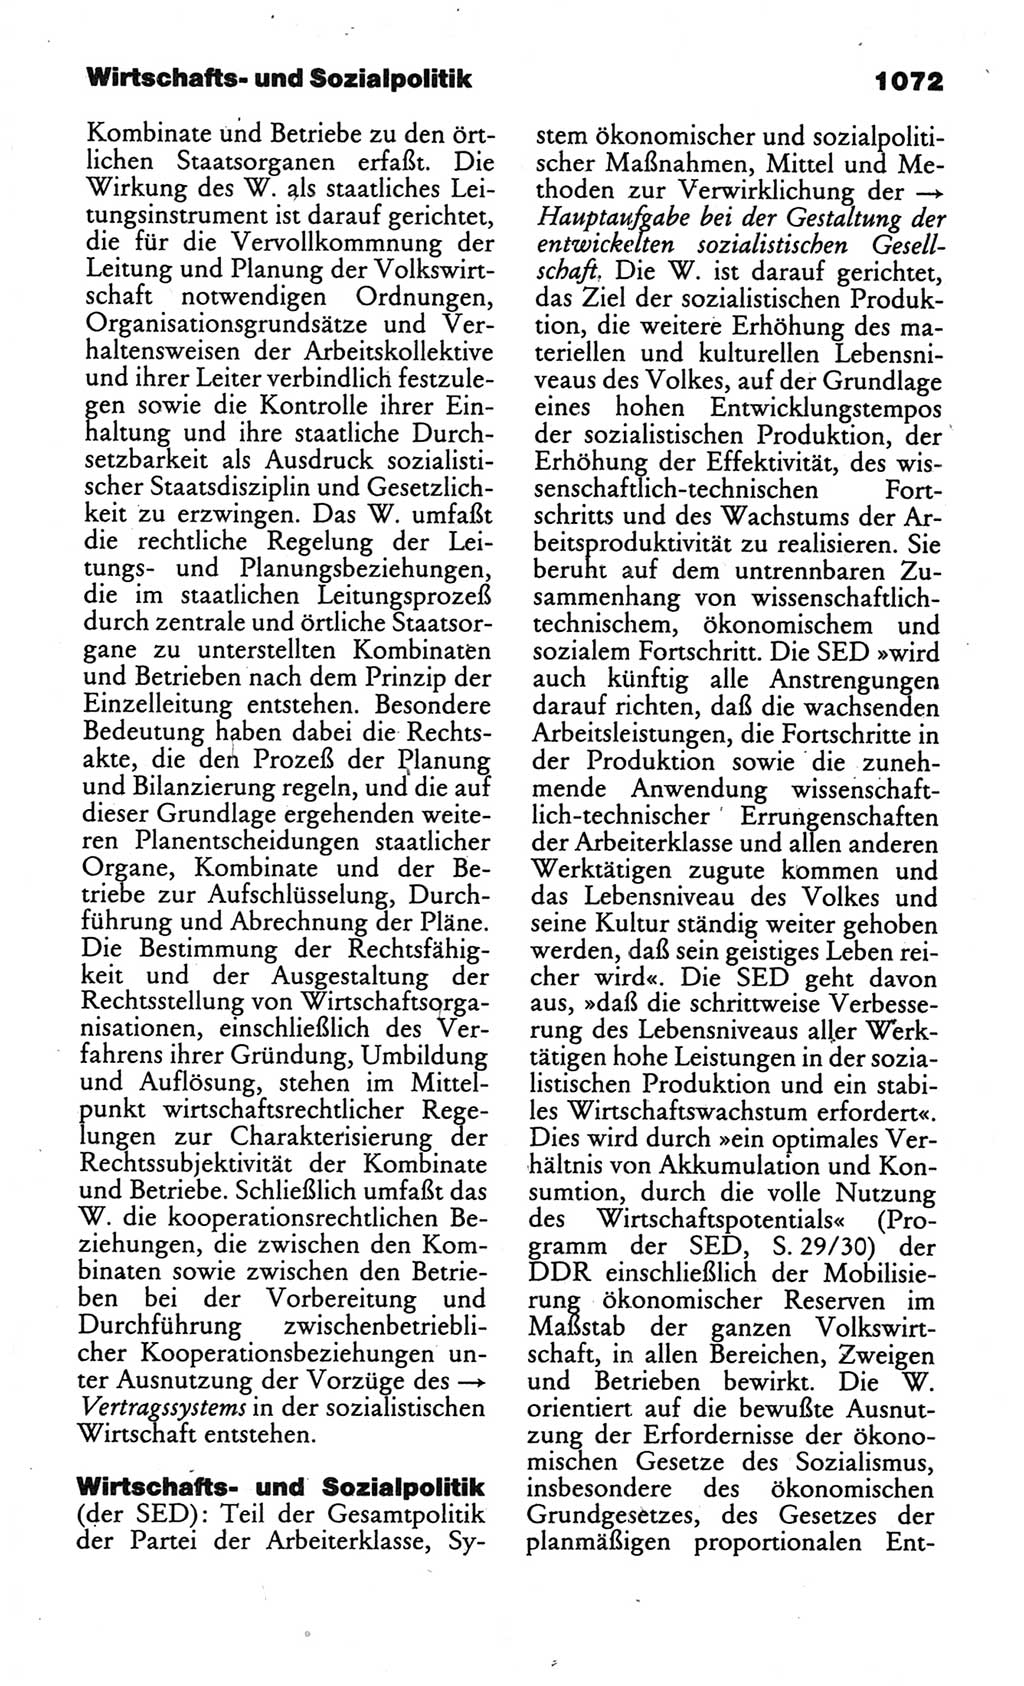 Kleines politisches Wörterbuch [Deutsche Demokratische Republik (DDR)] 1986, Seite 1072 (Kl. pol. Wb. DDR 1986, S. 1072)